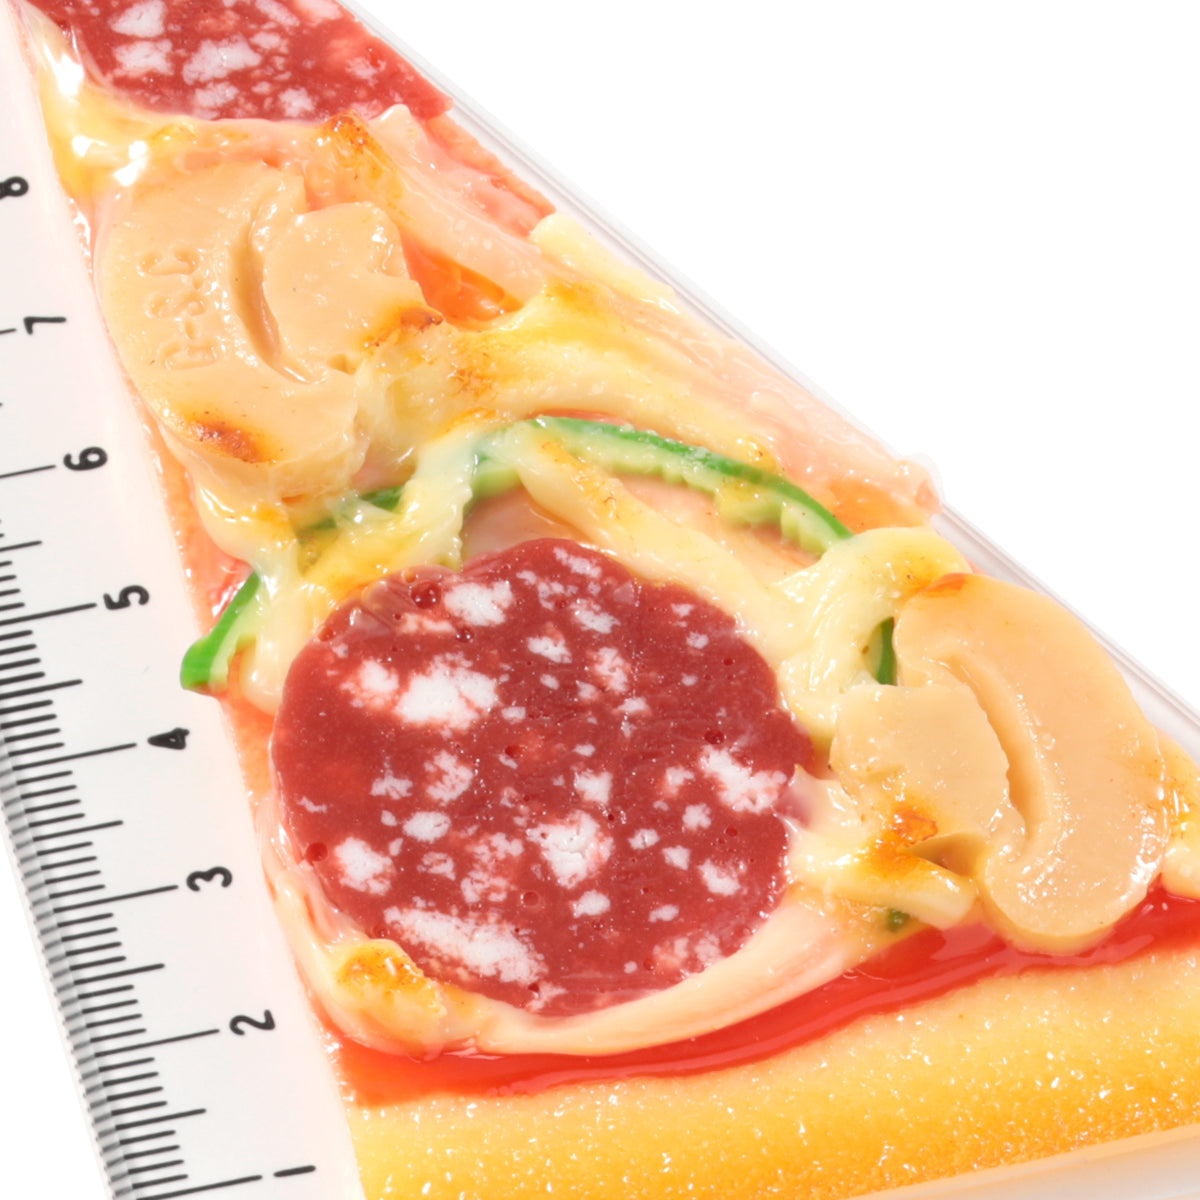 これは元祖食品サンプル屋「ピザ 定規」のアップの商品画像です。